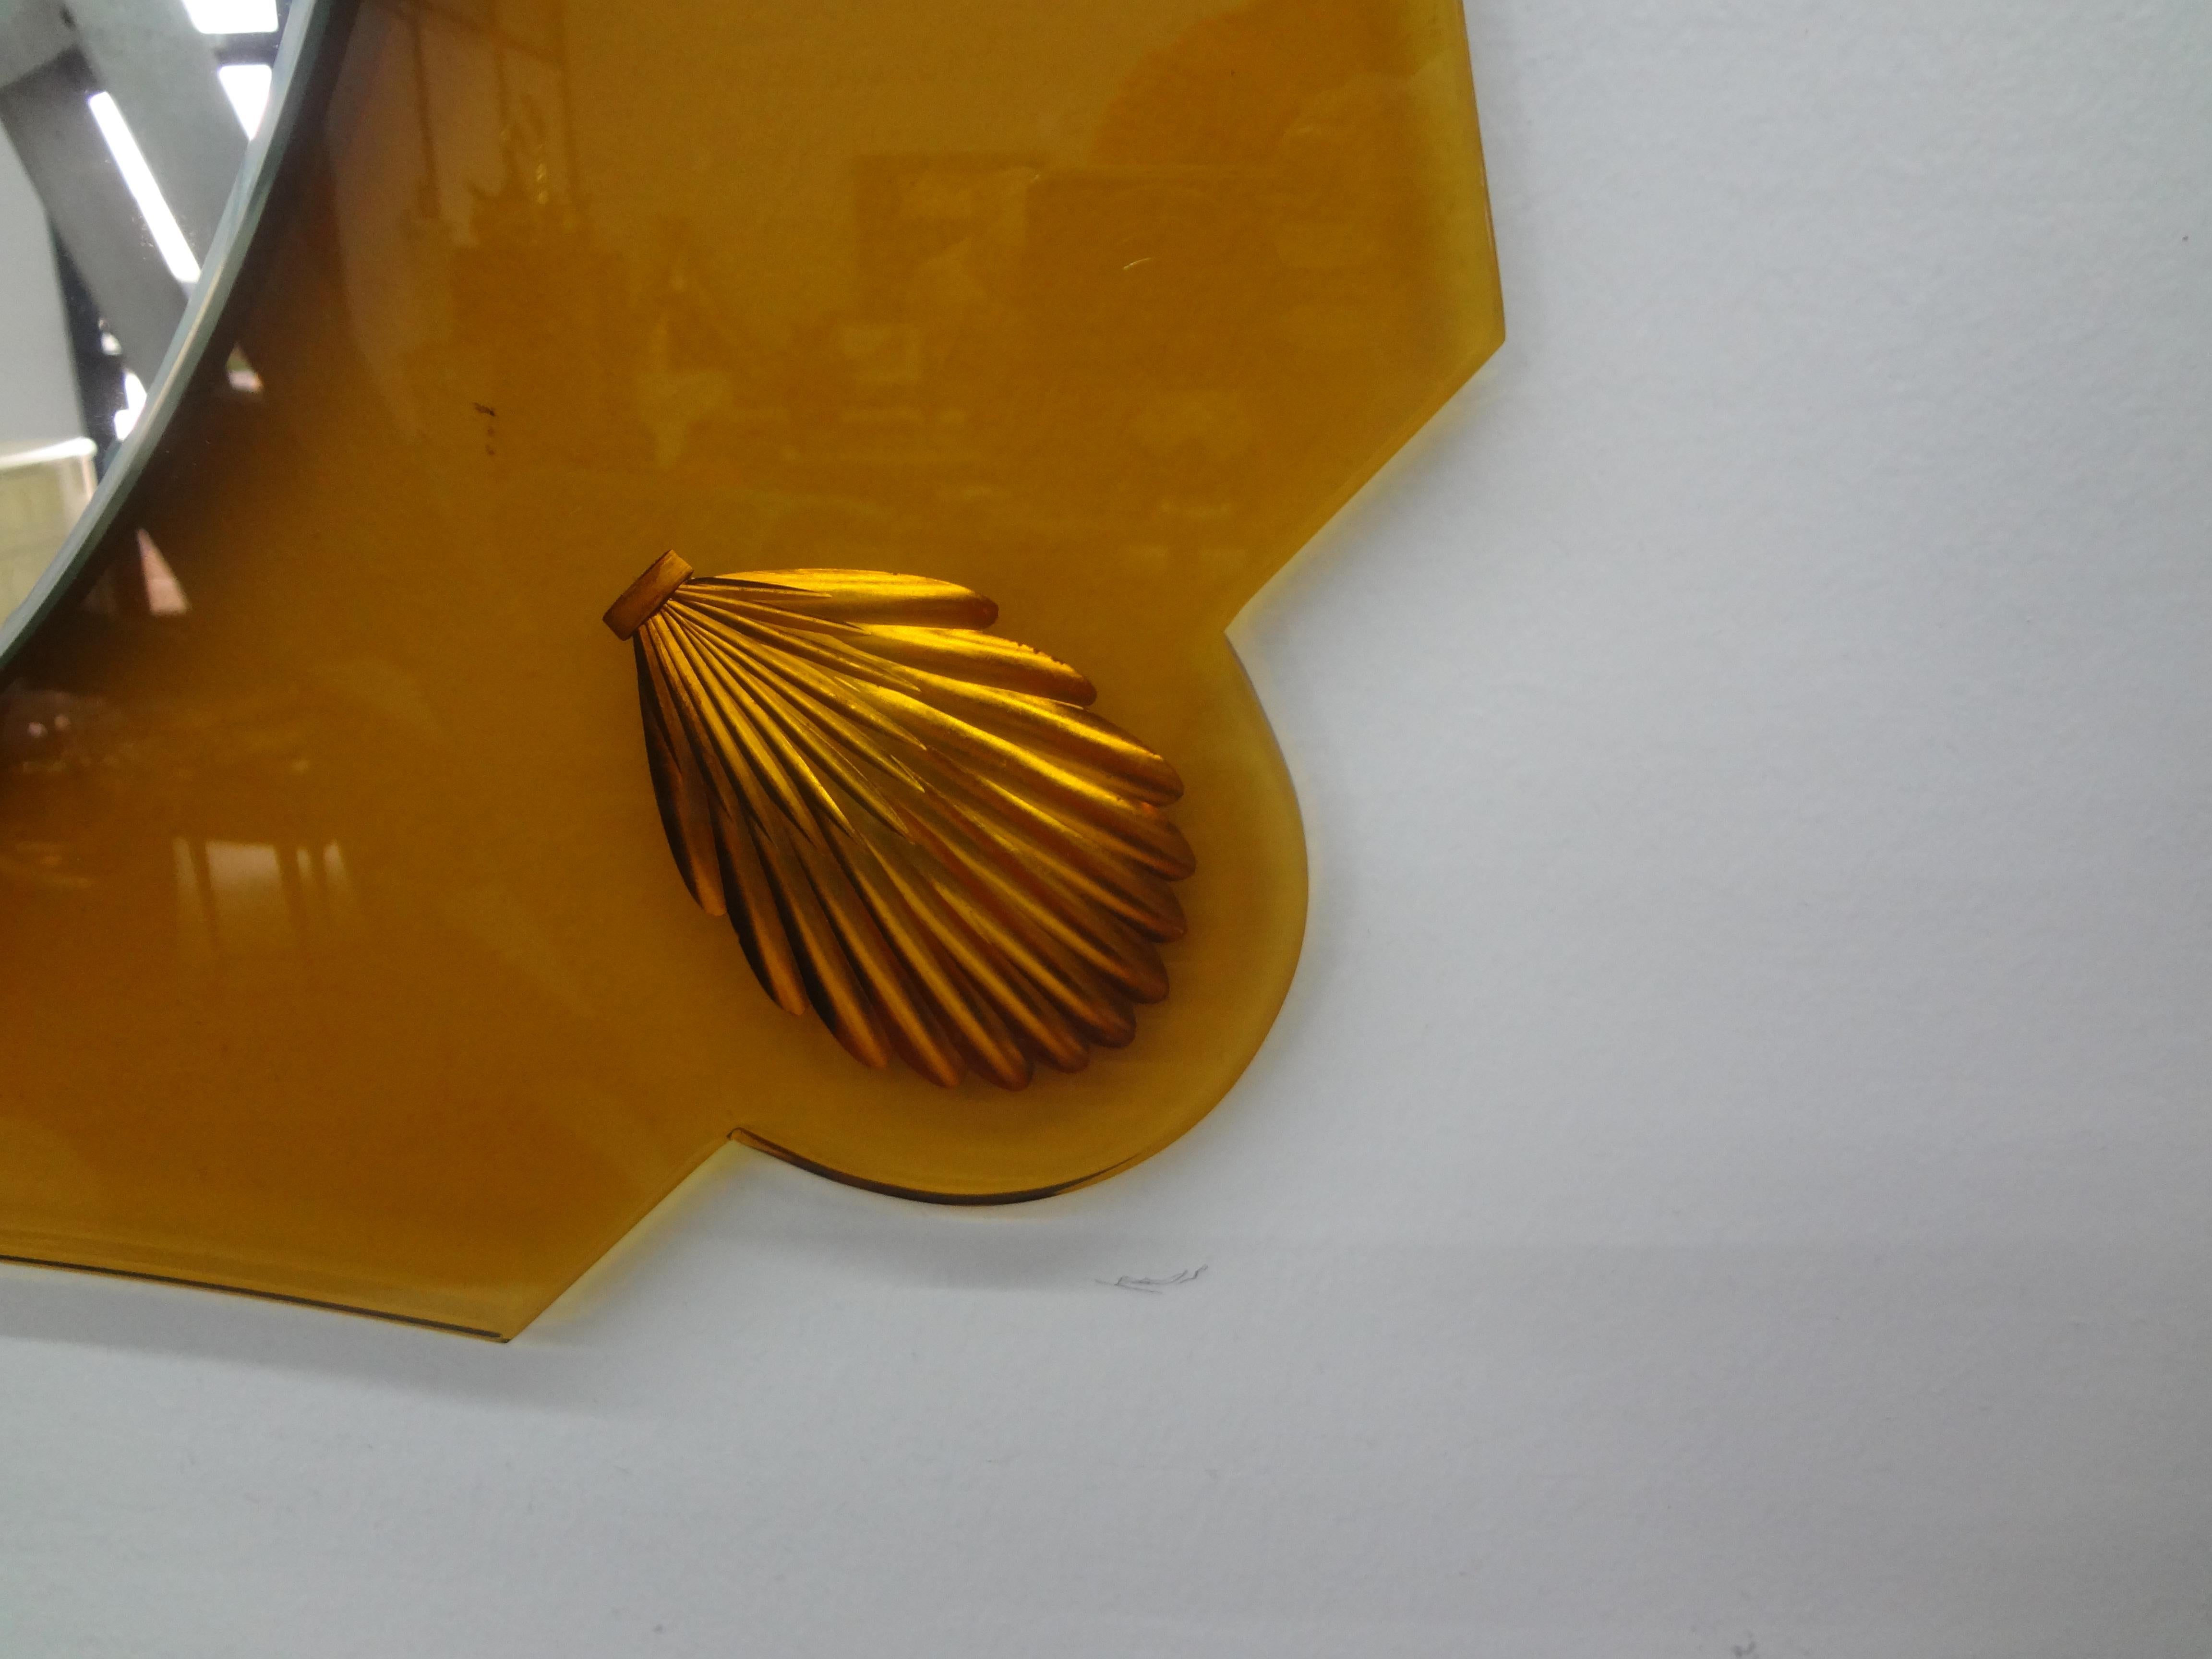 Miroir italien de style Fontana Arte jaune d'or.
Ce superbe miroir italien du milieu du siècle, inspiré par Pietro Chiesa, est composé d'un verre jaune/doré de forme inhabituelle, avec des coquillages dorés gravés dans chaque coin et un miroir